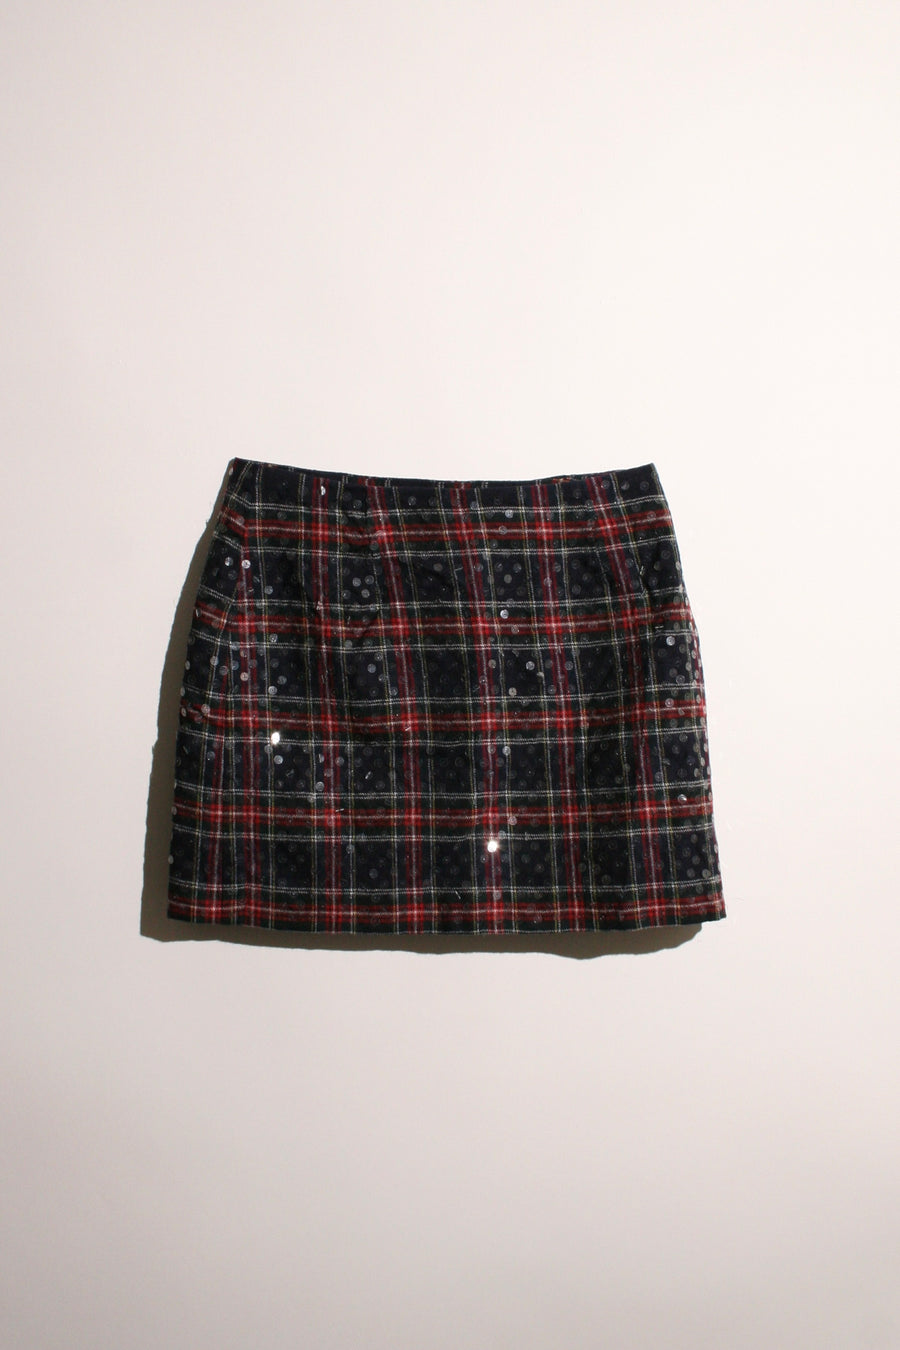 Express - Plaid Sequin Skirt (2)